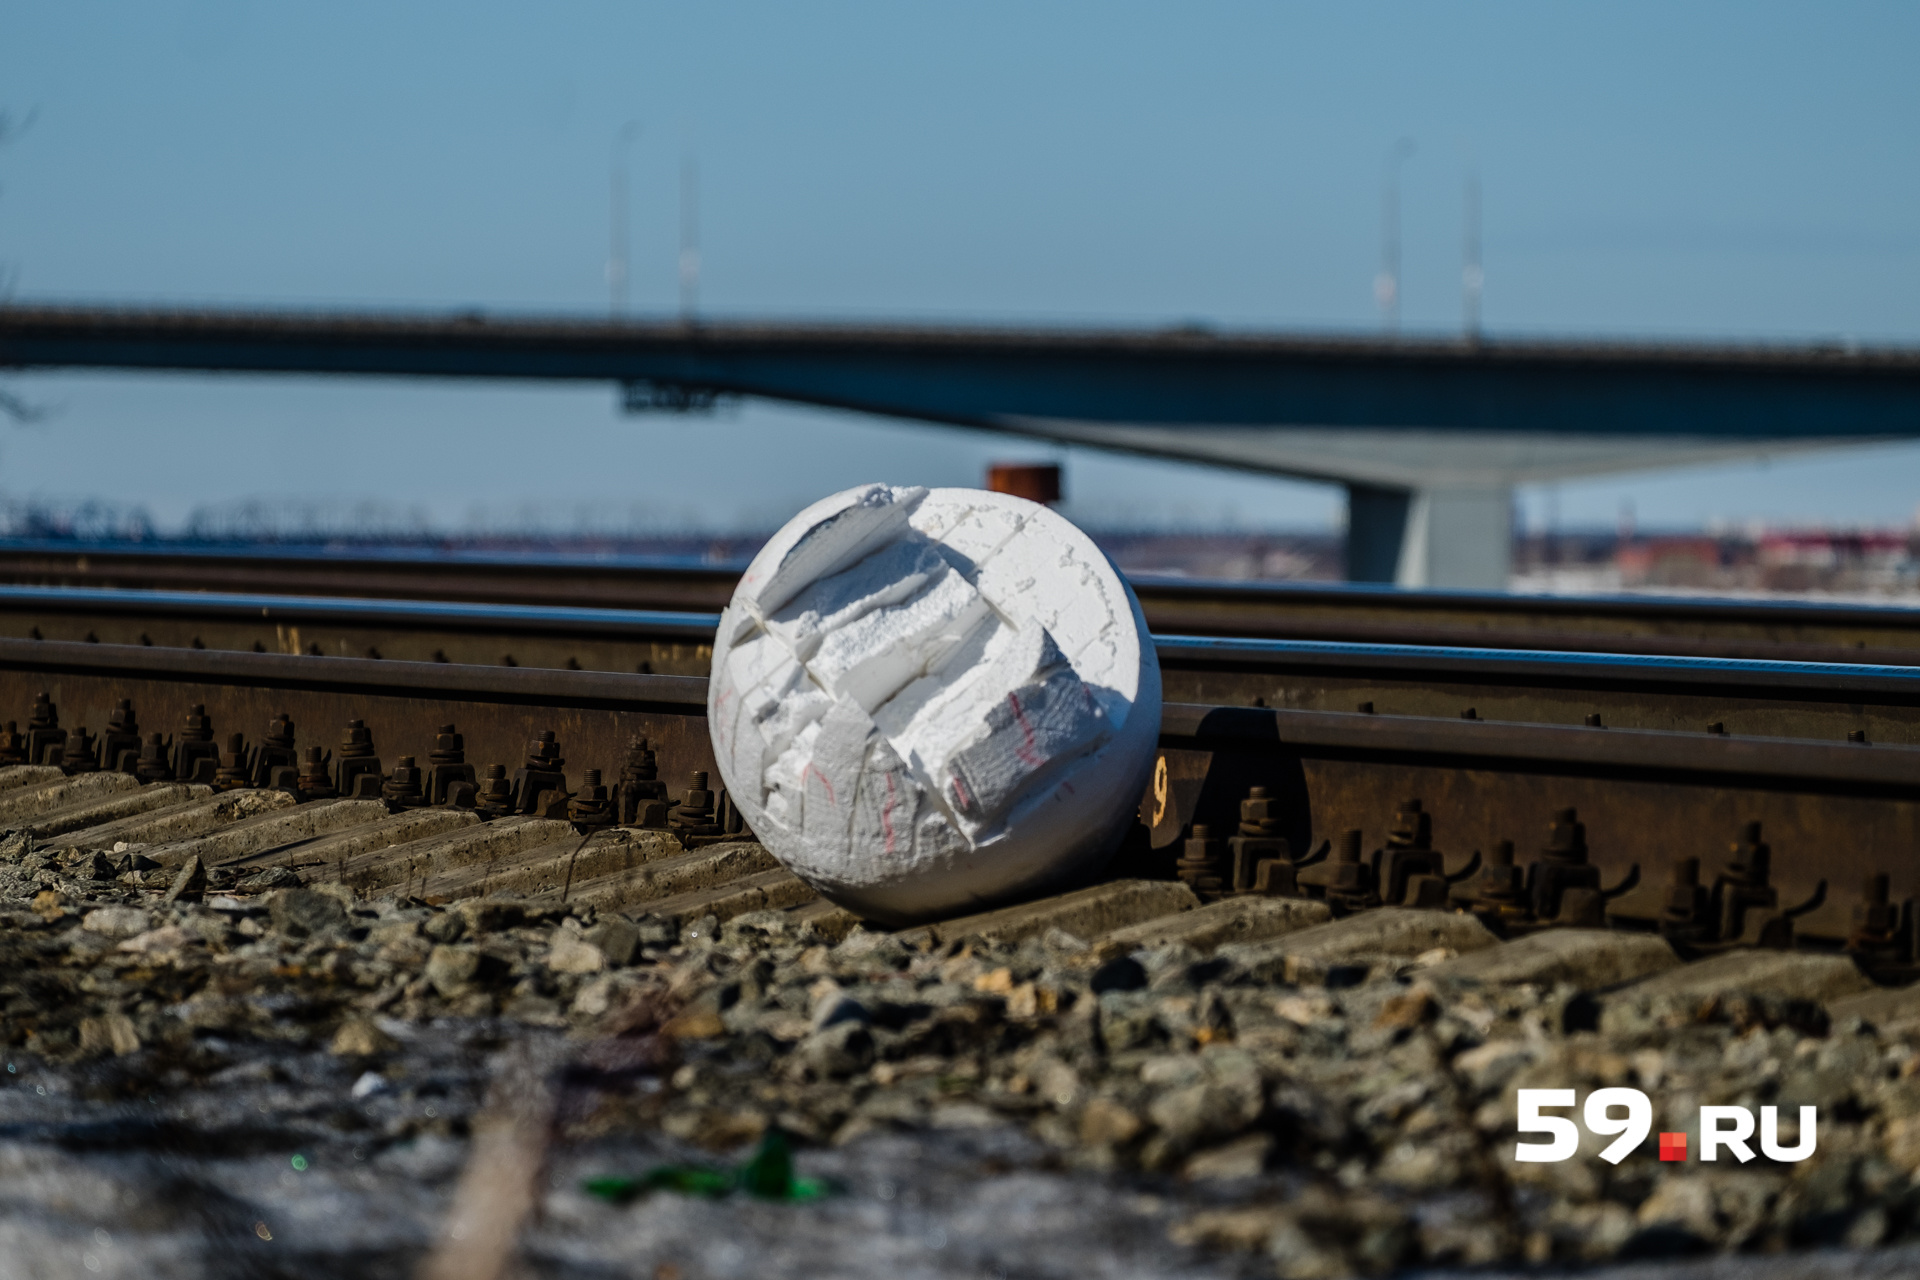 Арт-объект лежит на железнодорожных путях